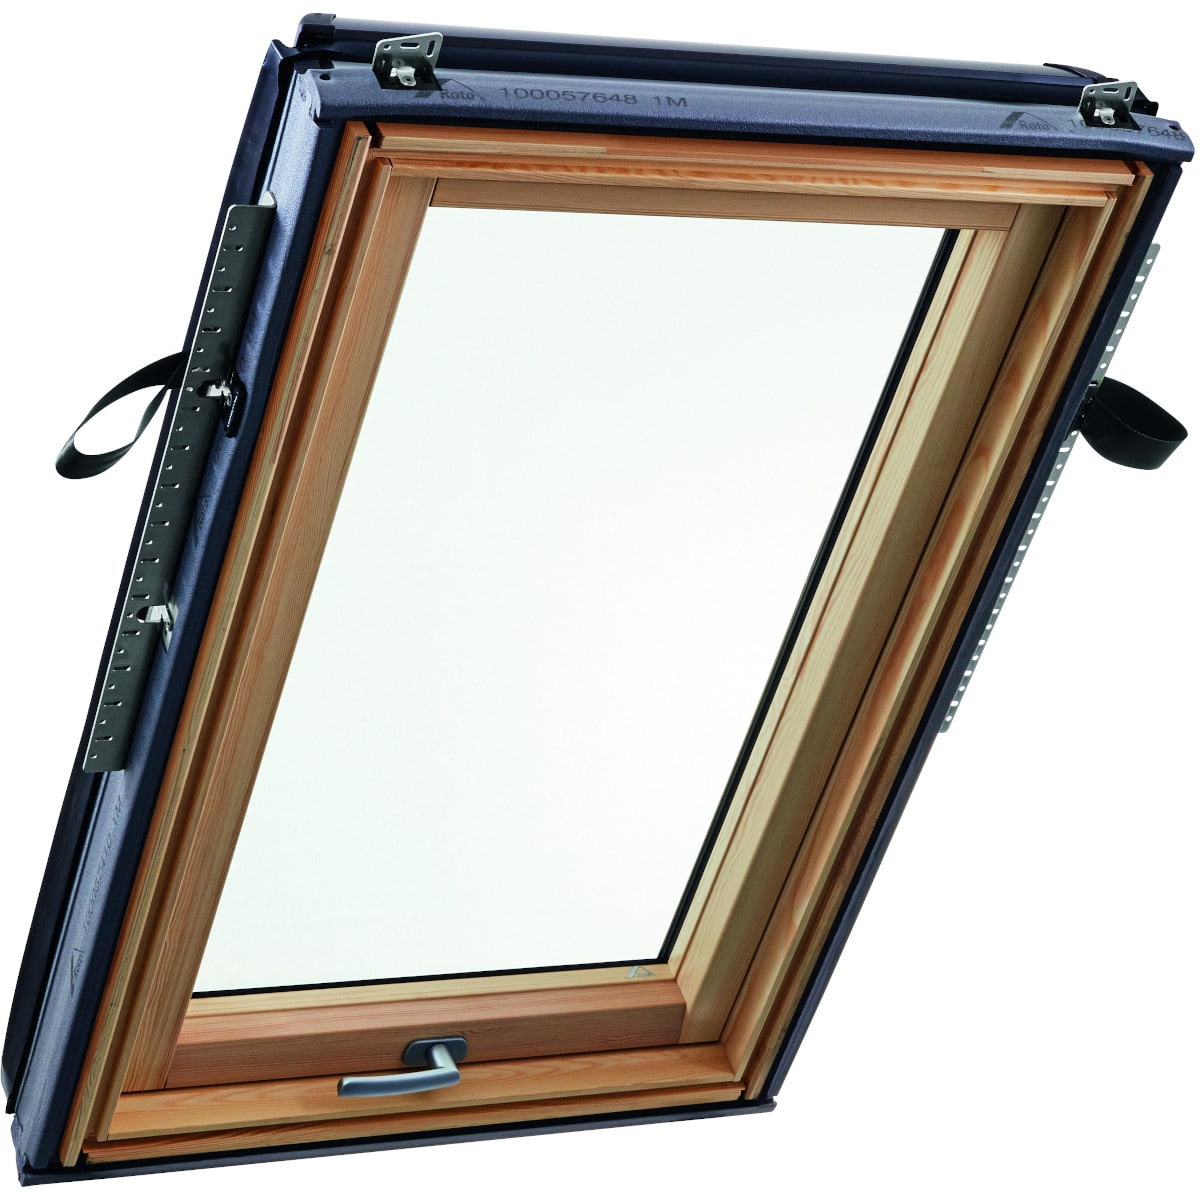 Окно мансардное деревянное с нижней ручкой Roto R88C H200. 1 камерный стеклопакет. ThermoBlock WD.